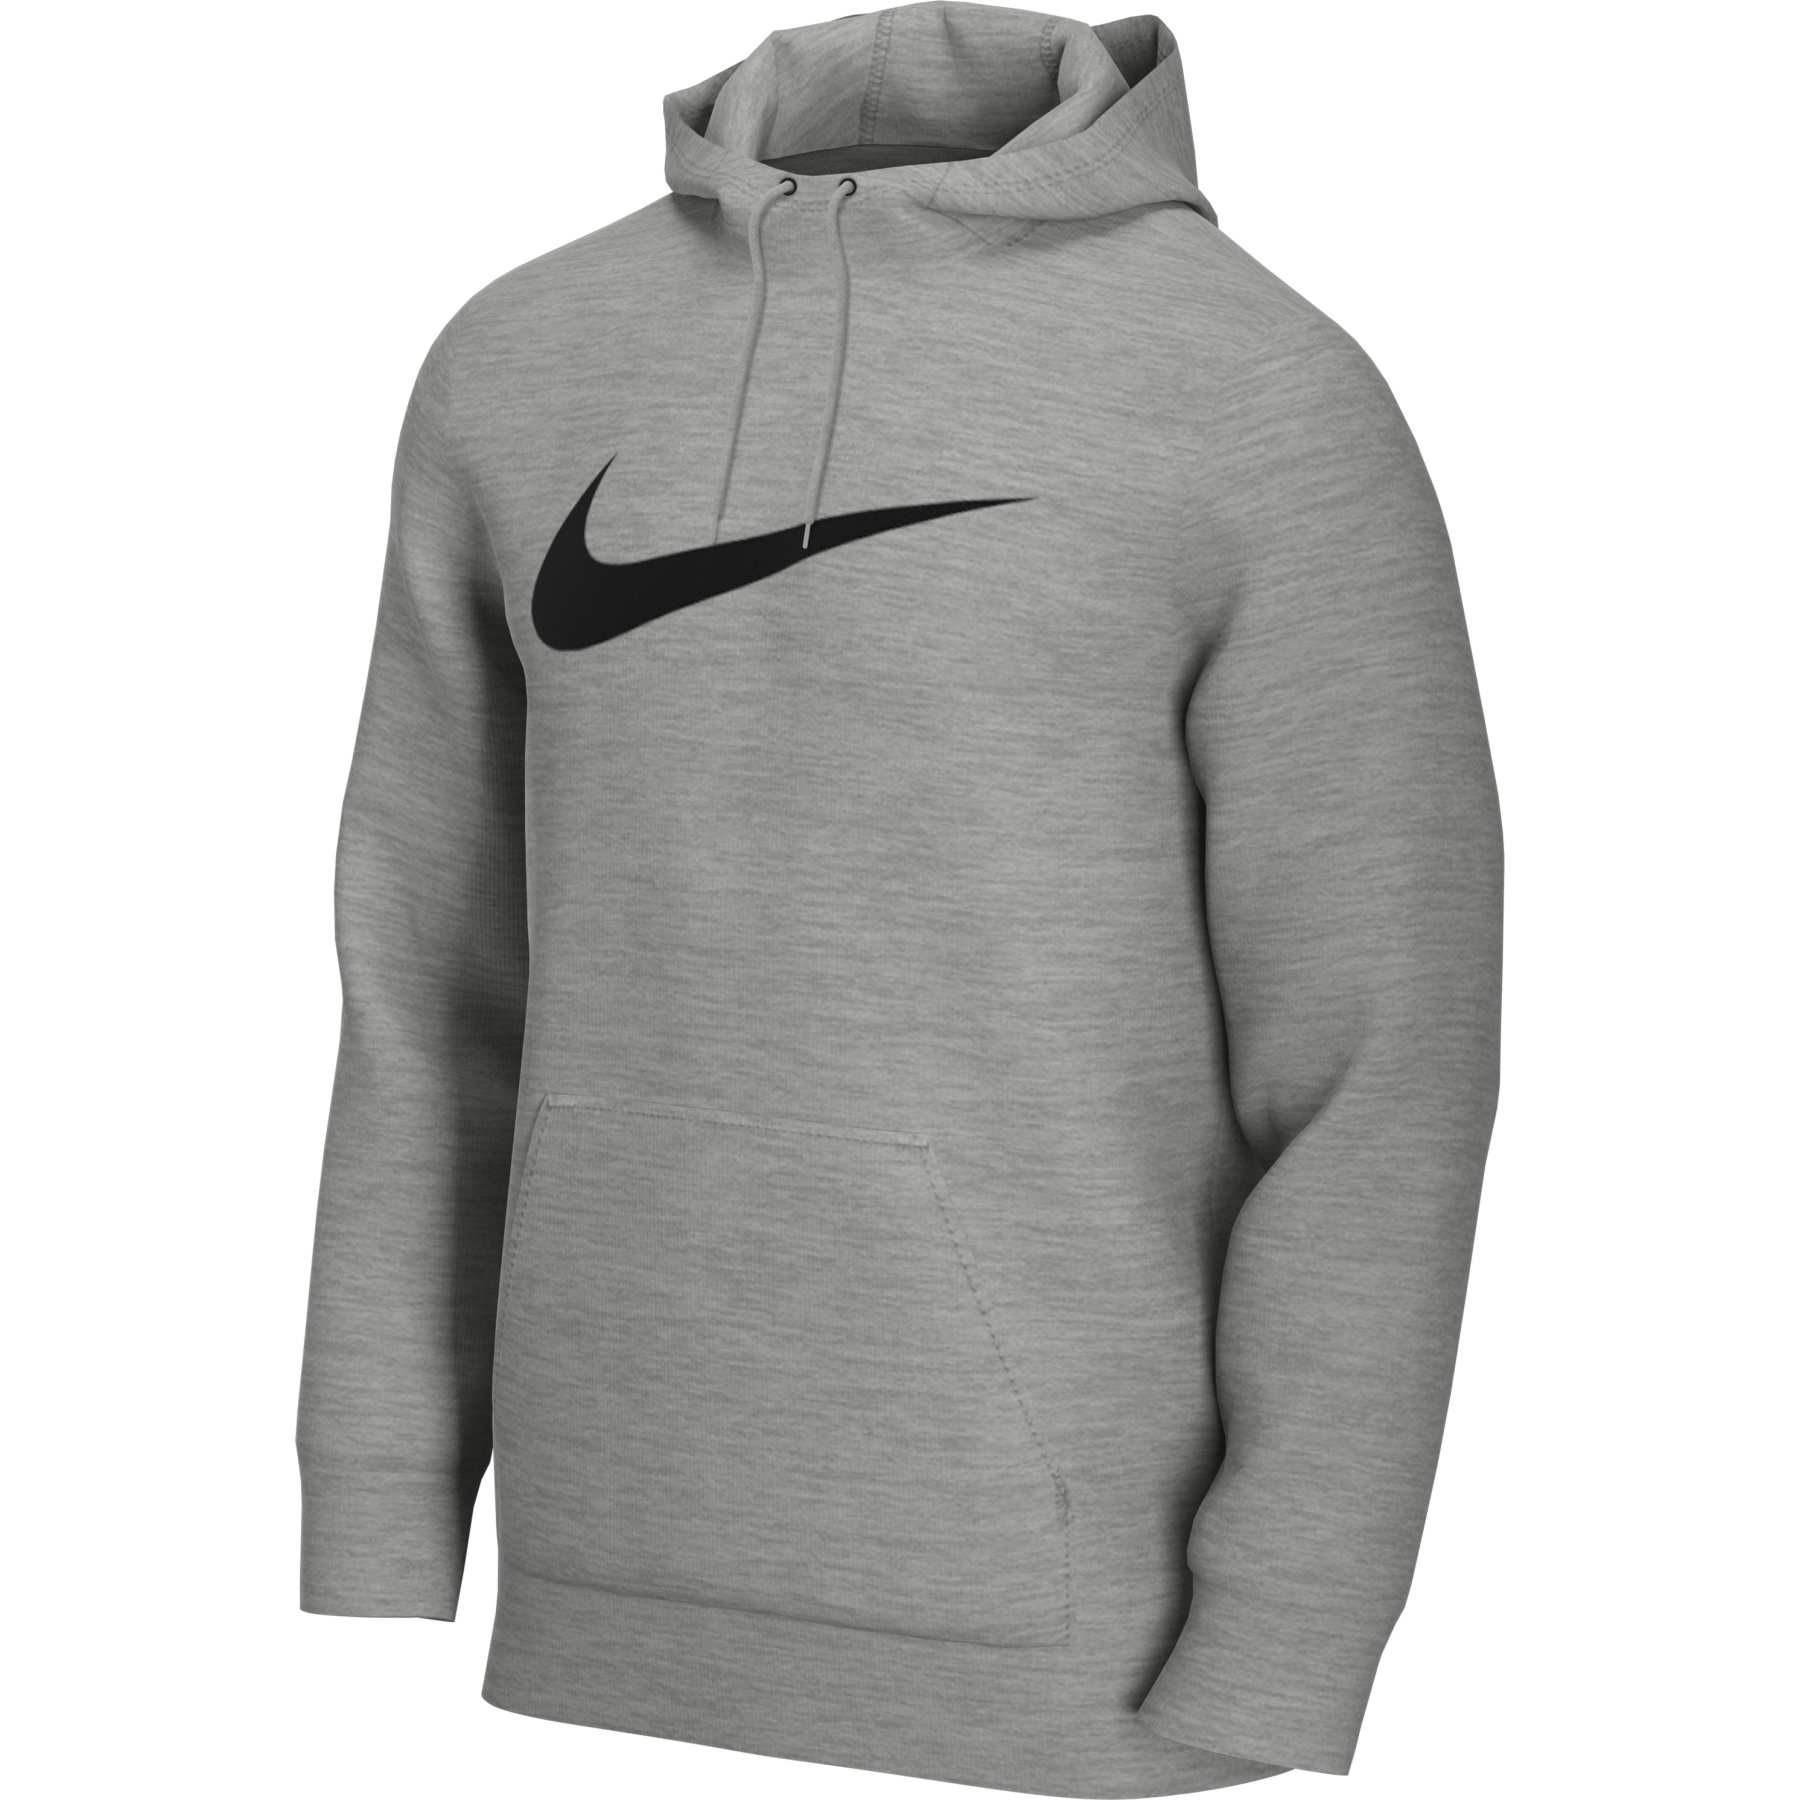 Produktbild von Nike Dri-FIT Training Pullover für Herren - dark grey heather/black CZ2425-063